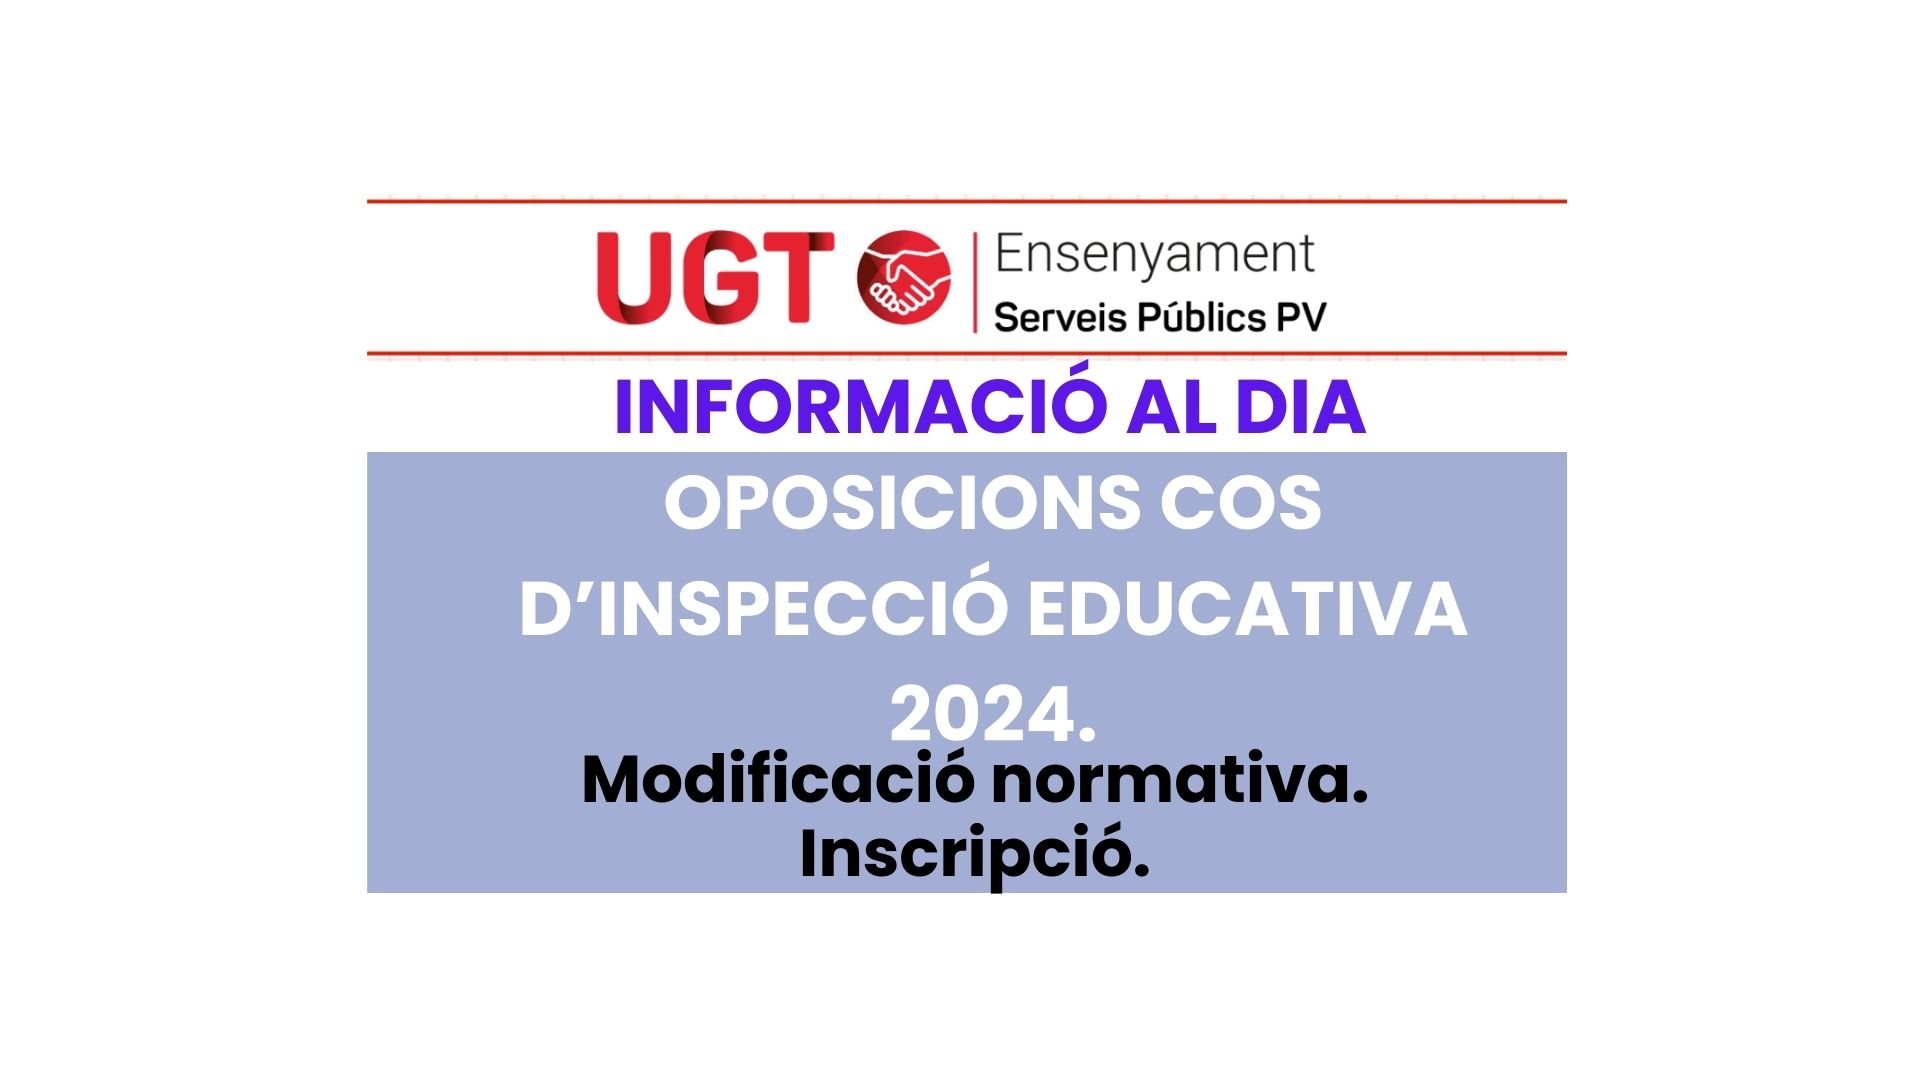 UGT INFORMA. Oposicions Cos d’Inspecció Educativa. Resultats prova valencià nivell C1.